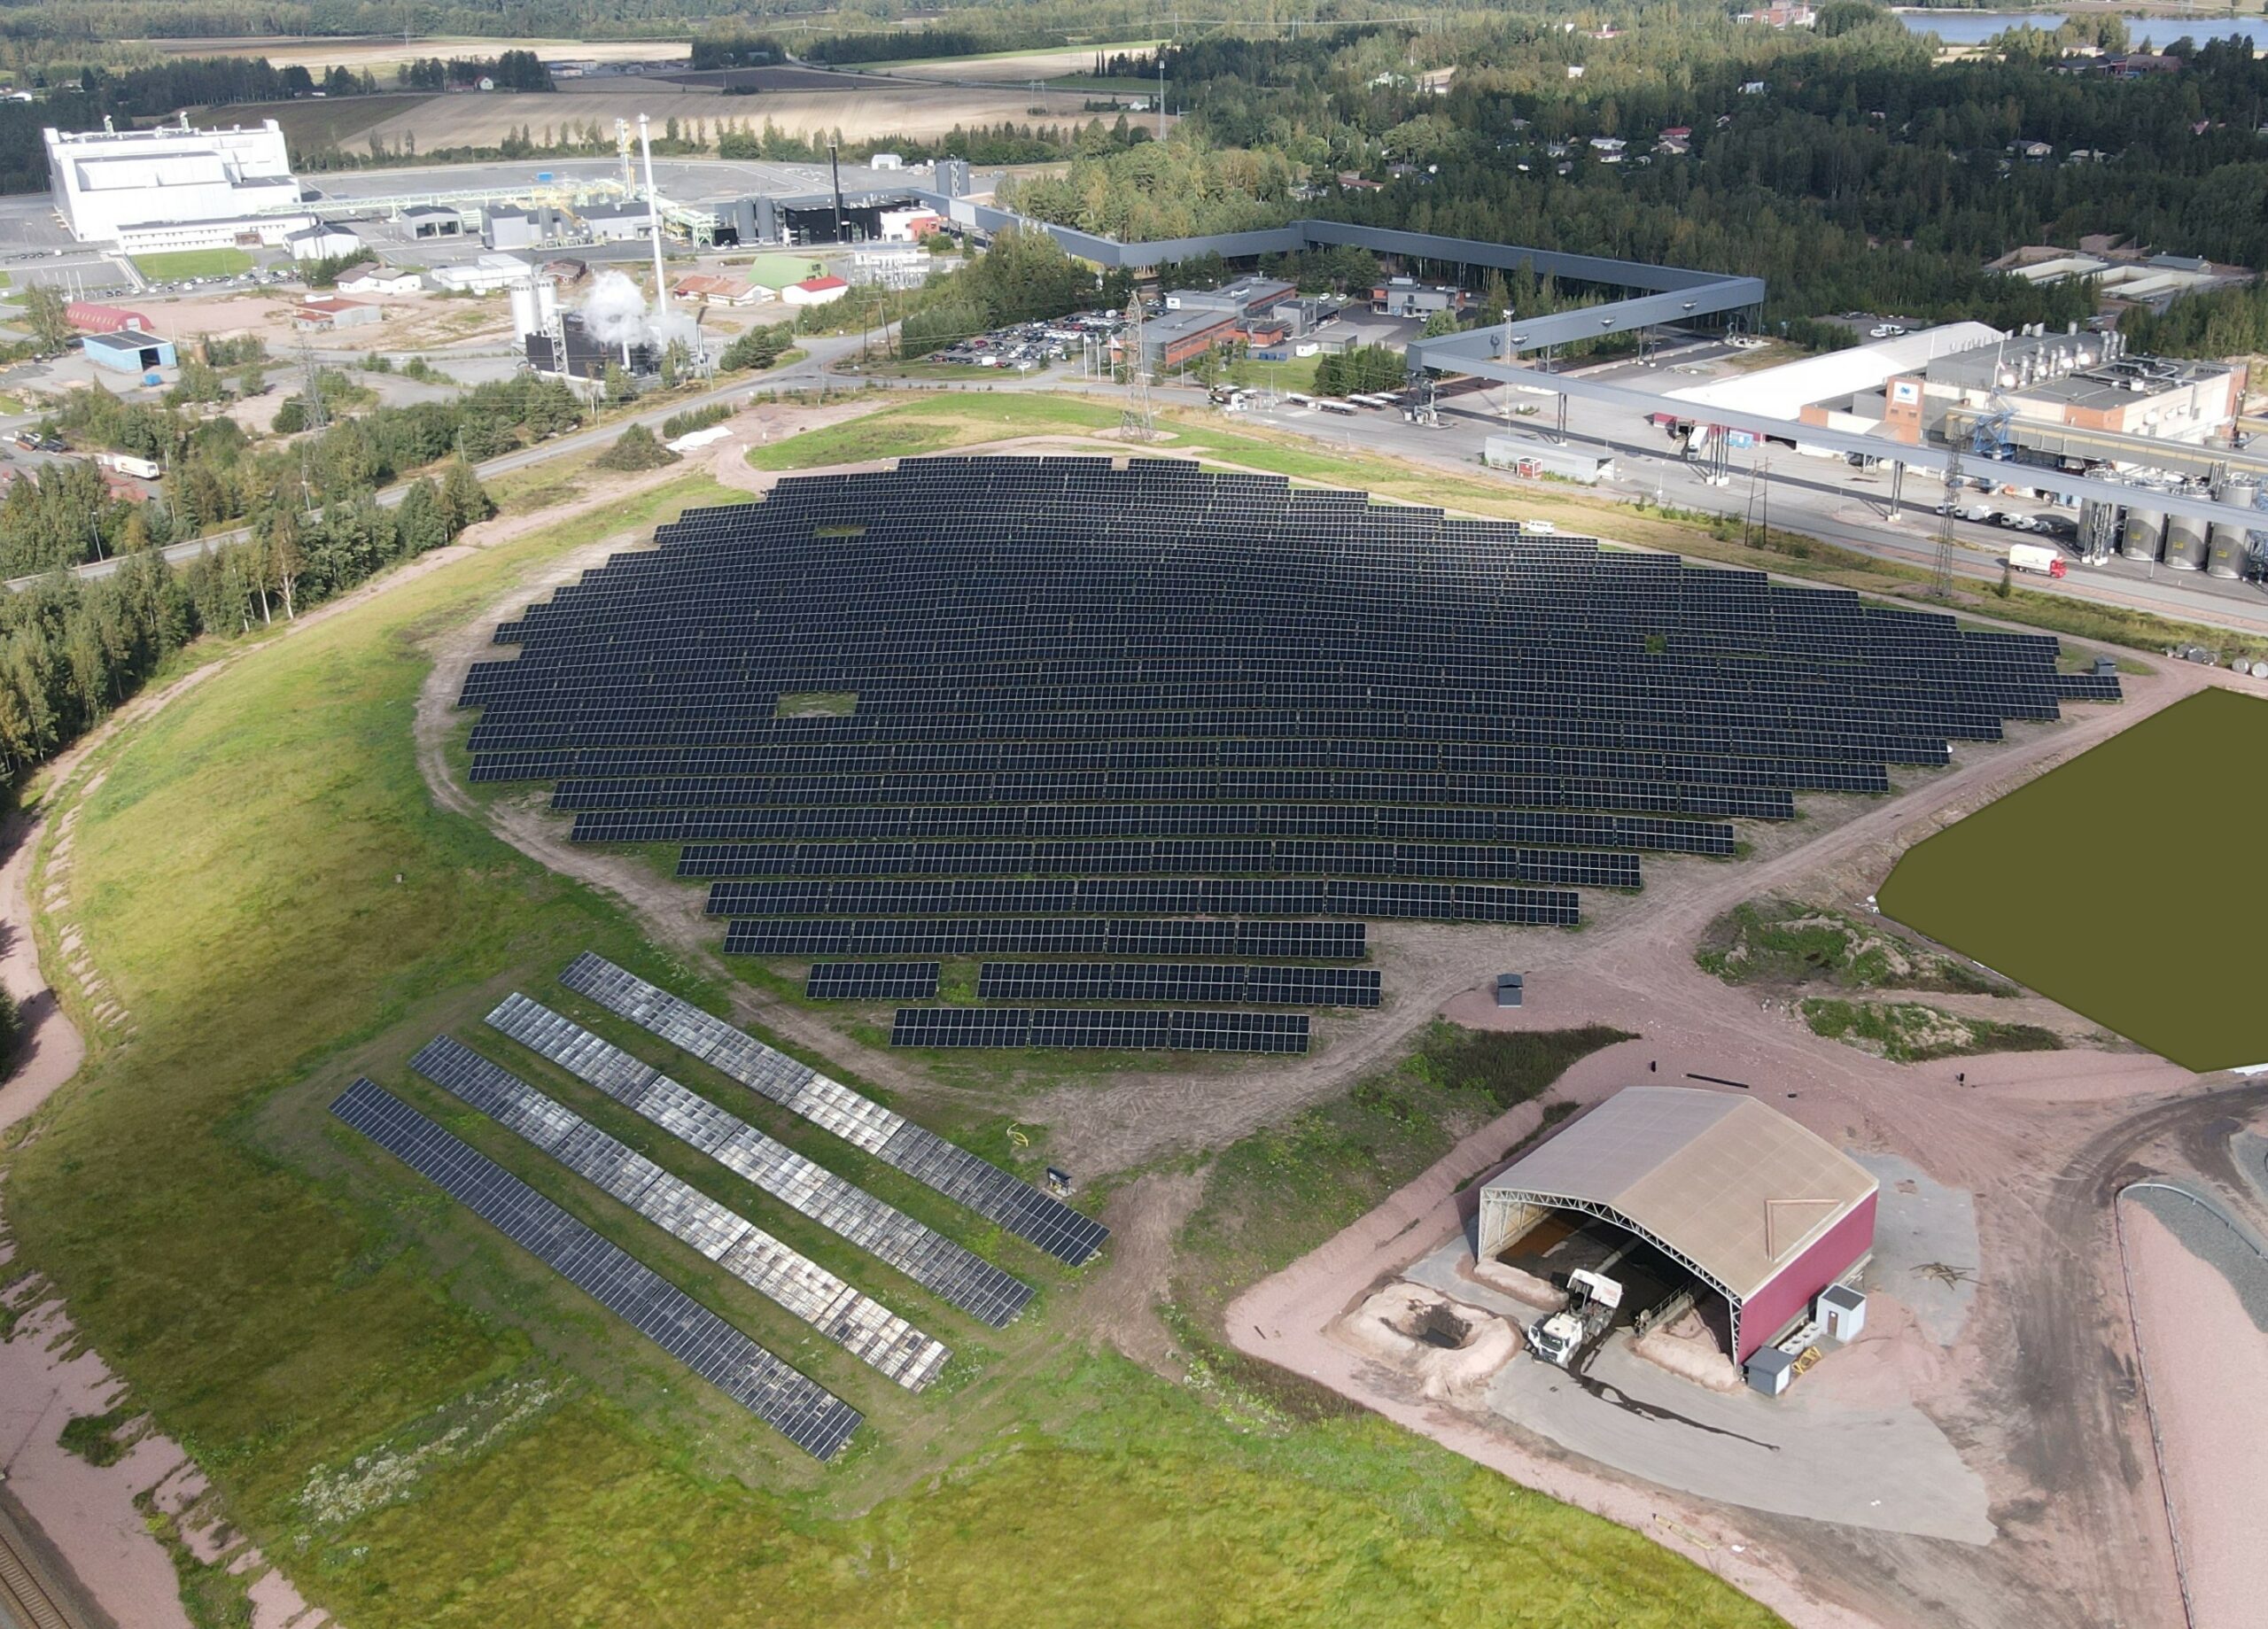 Bolidenin 3,9 MW aurinkovoimala Harjavallassa, ilmakuva. Paneelit ovat asennettuna kahden päällekkäisen ja kymmenien peräkkäisten paneelien muodostamissa riveissä, noin viiden metrin välein kattaen noin viiden hehtaarin alueen. Vieressä latorakennus, ympärillä nurmea. Taustalla näkyy teollisuusaluetta.